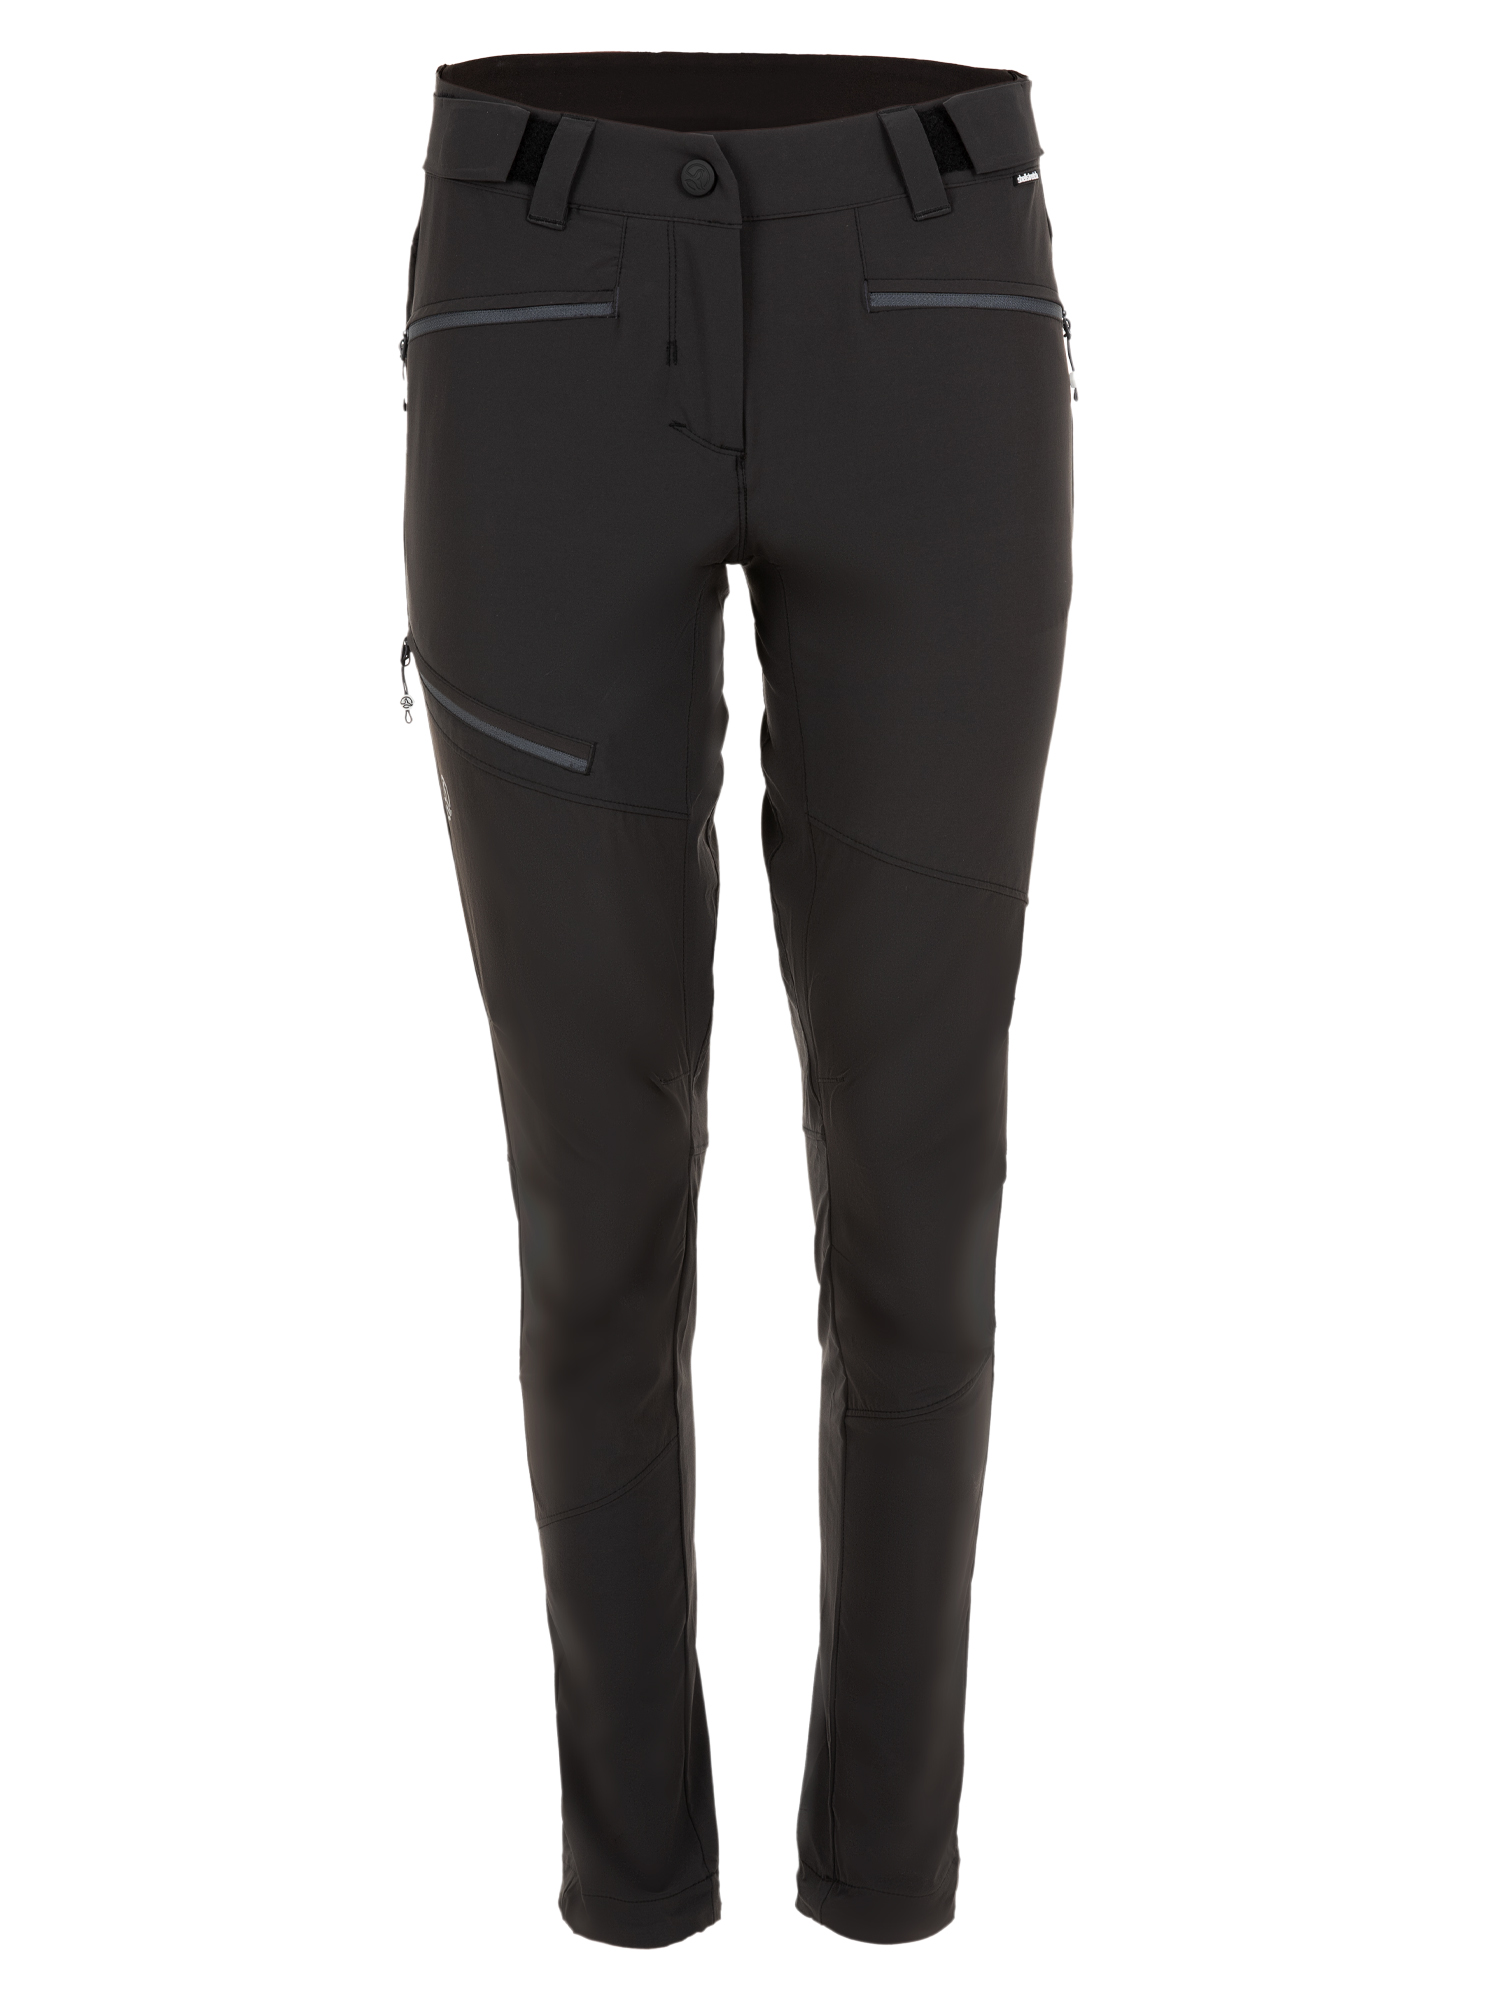 Спортивные брюки женские Ternua Rotar Pt W черные XS